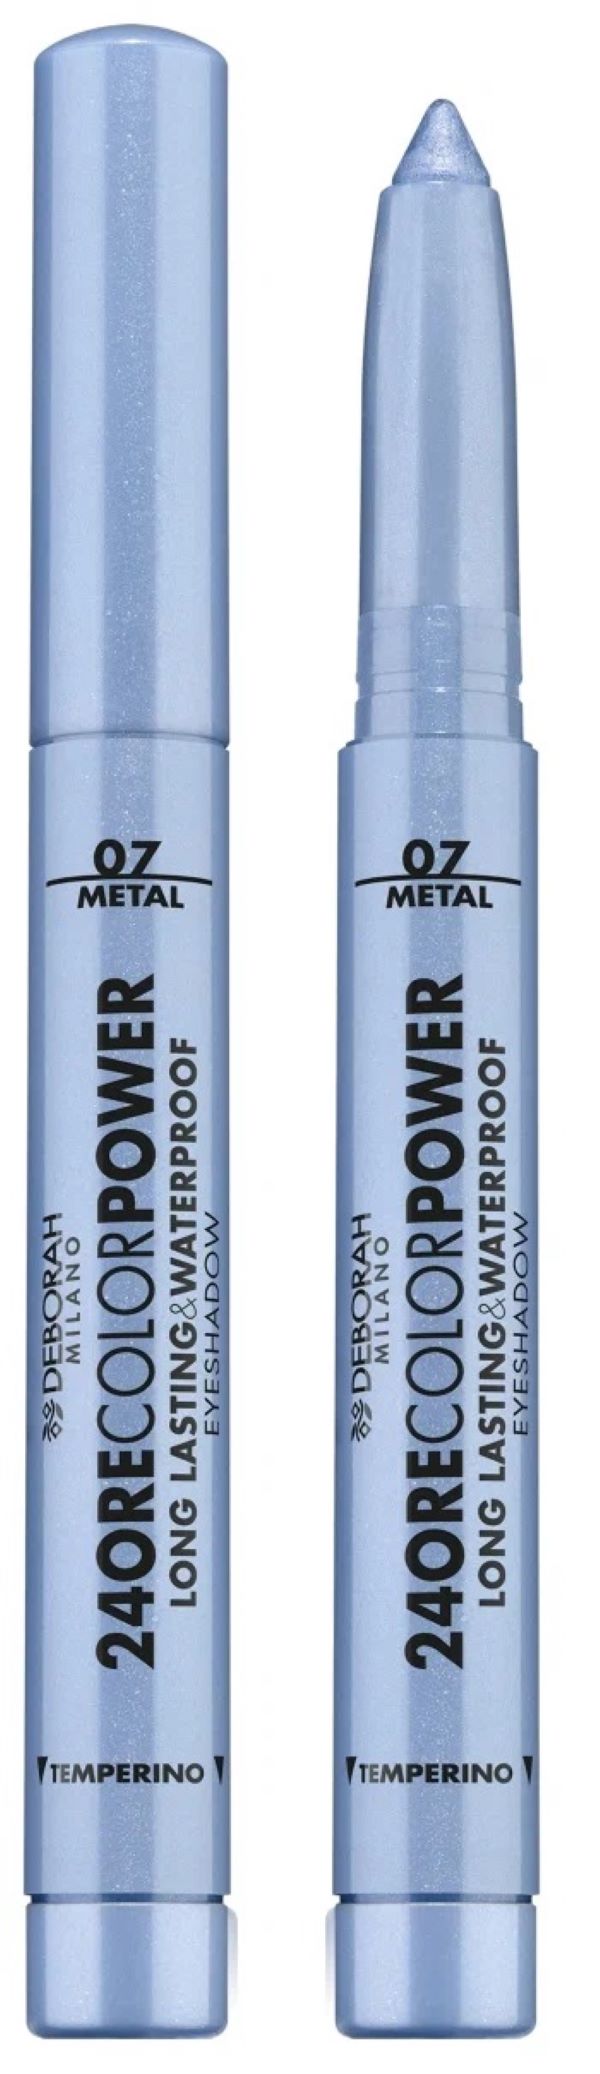 Тени карандаш стойкие Deborah Milano 24Ore Color Power Eyeshadow 1.4 г 2 шт deborah milano точилка sharpener